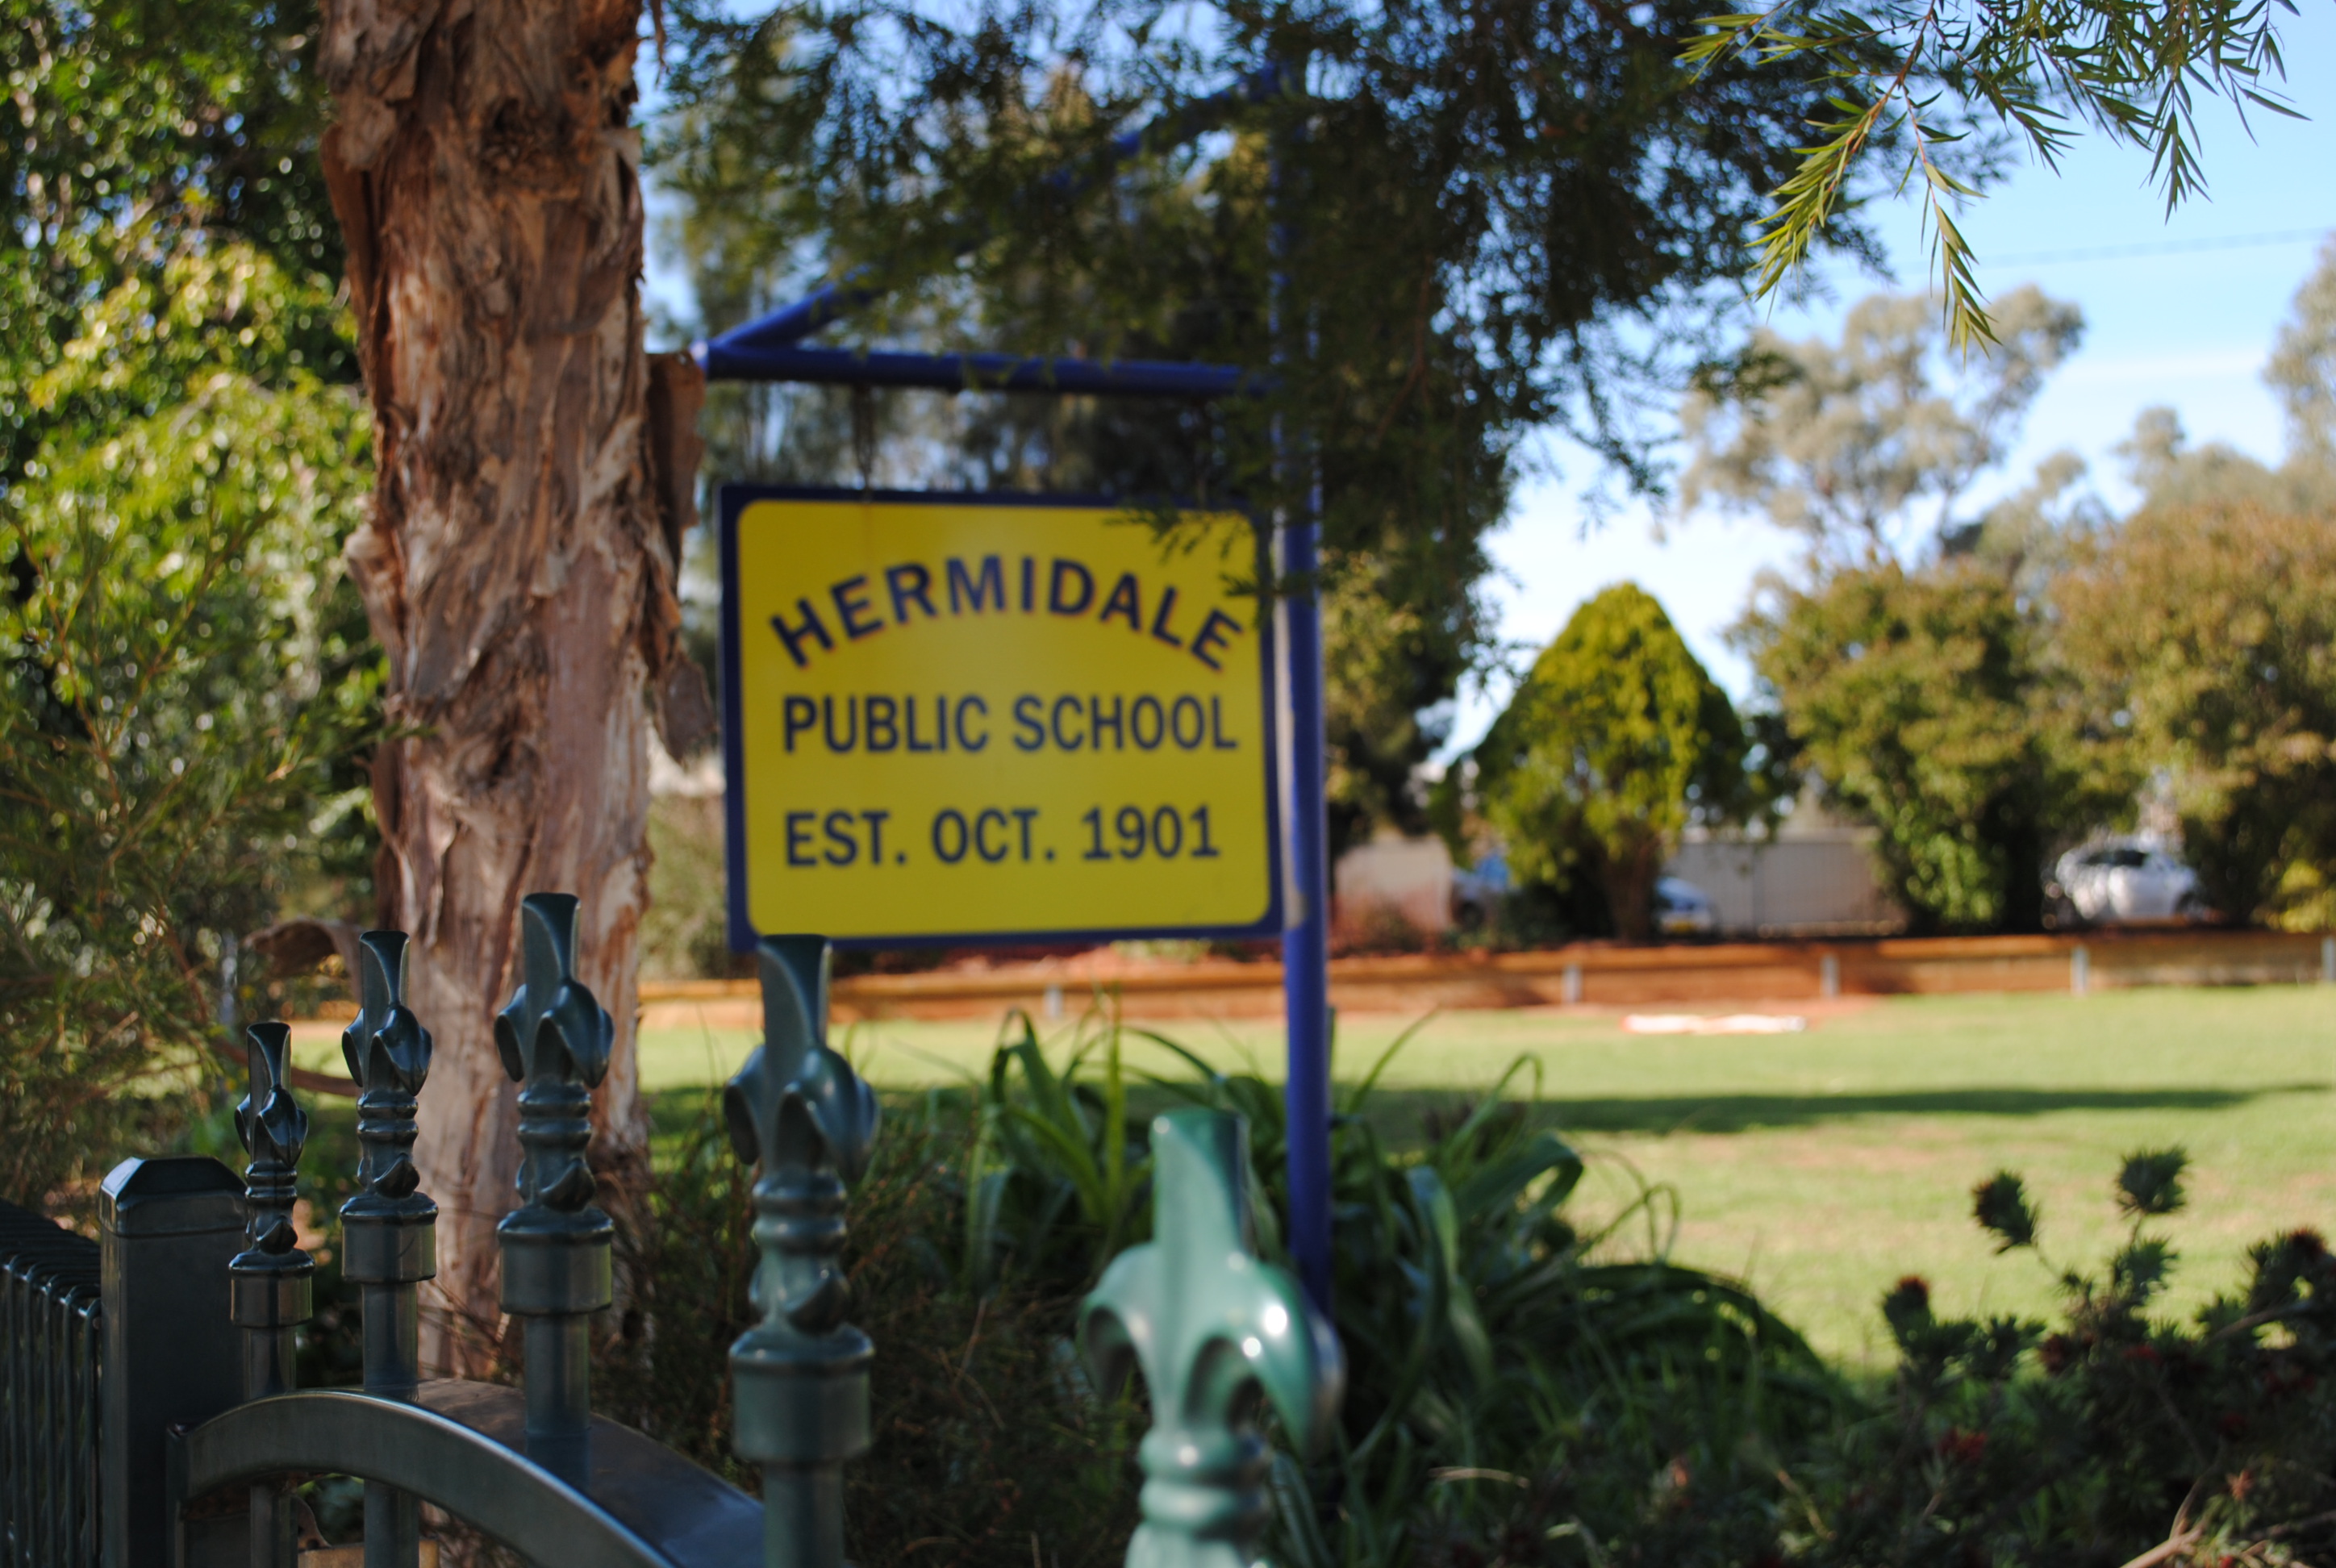 Hermidale Public School